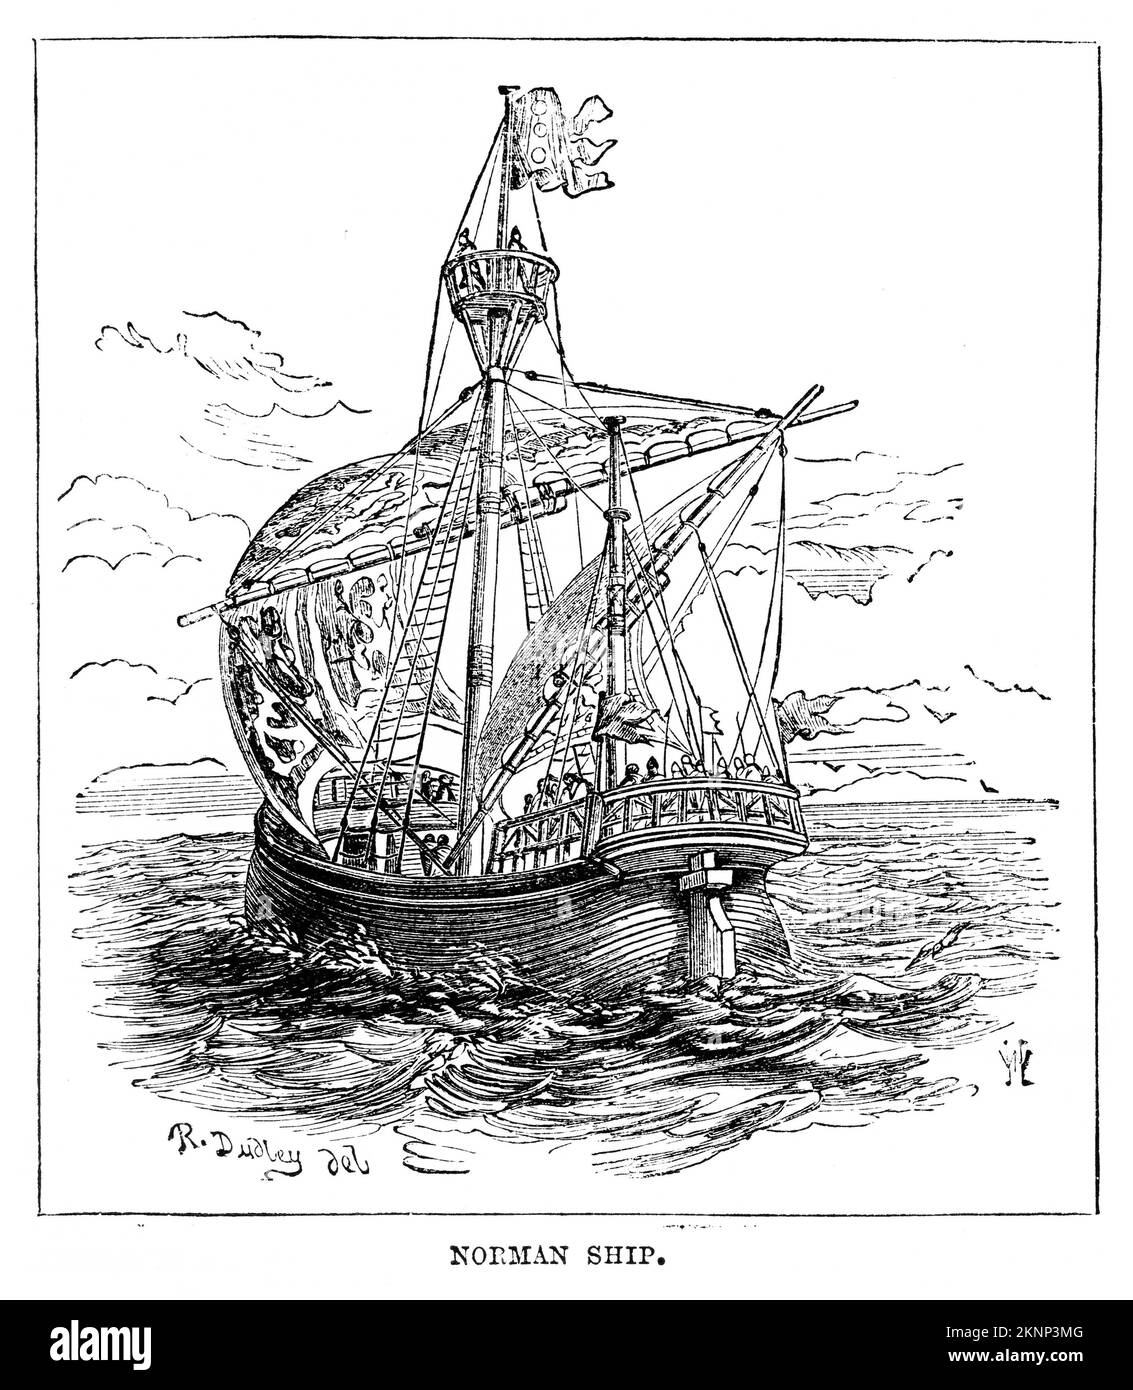 Engraving of a Norman ship at sea, circa 1880 Stock Photo